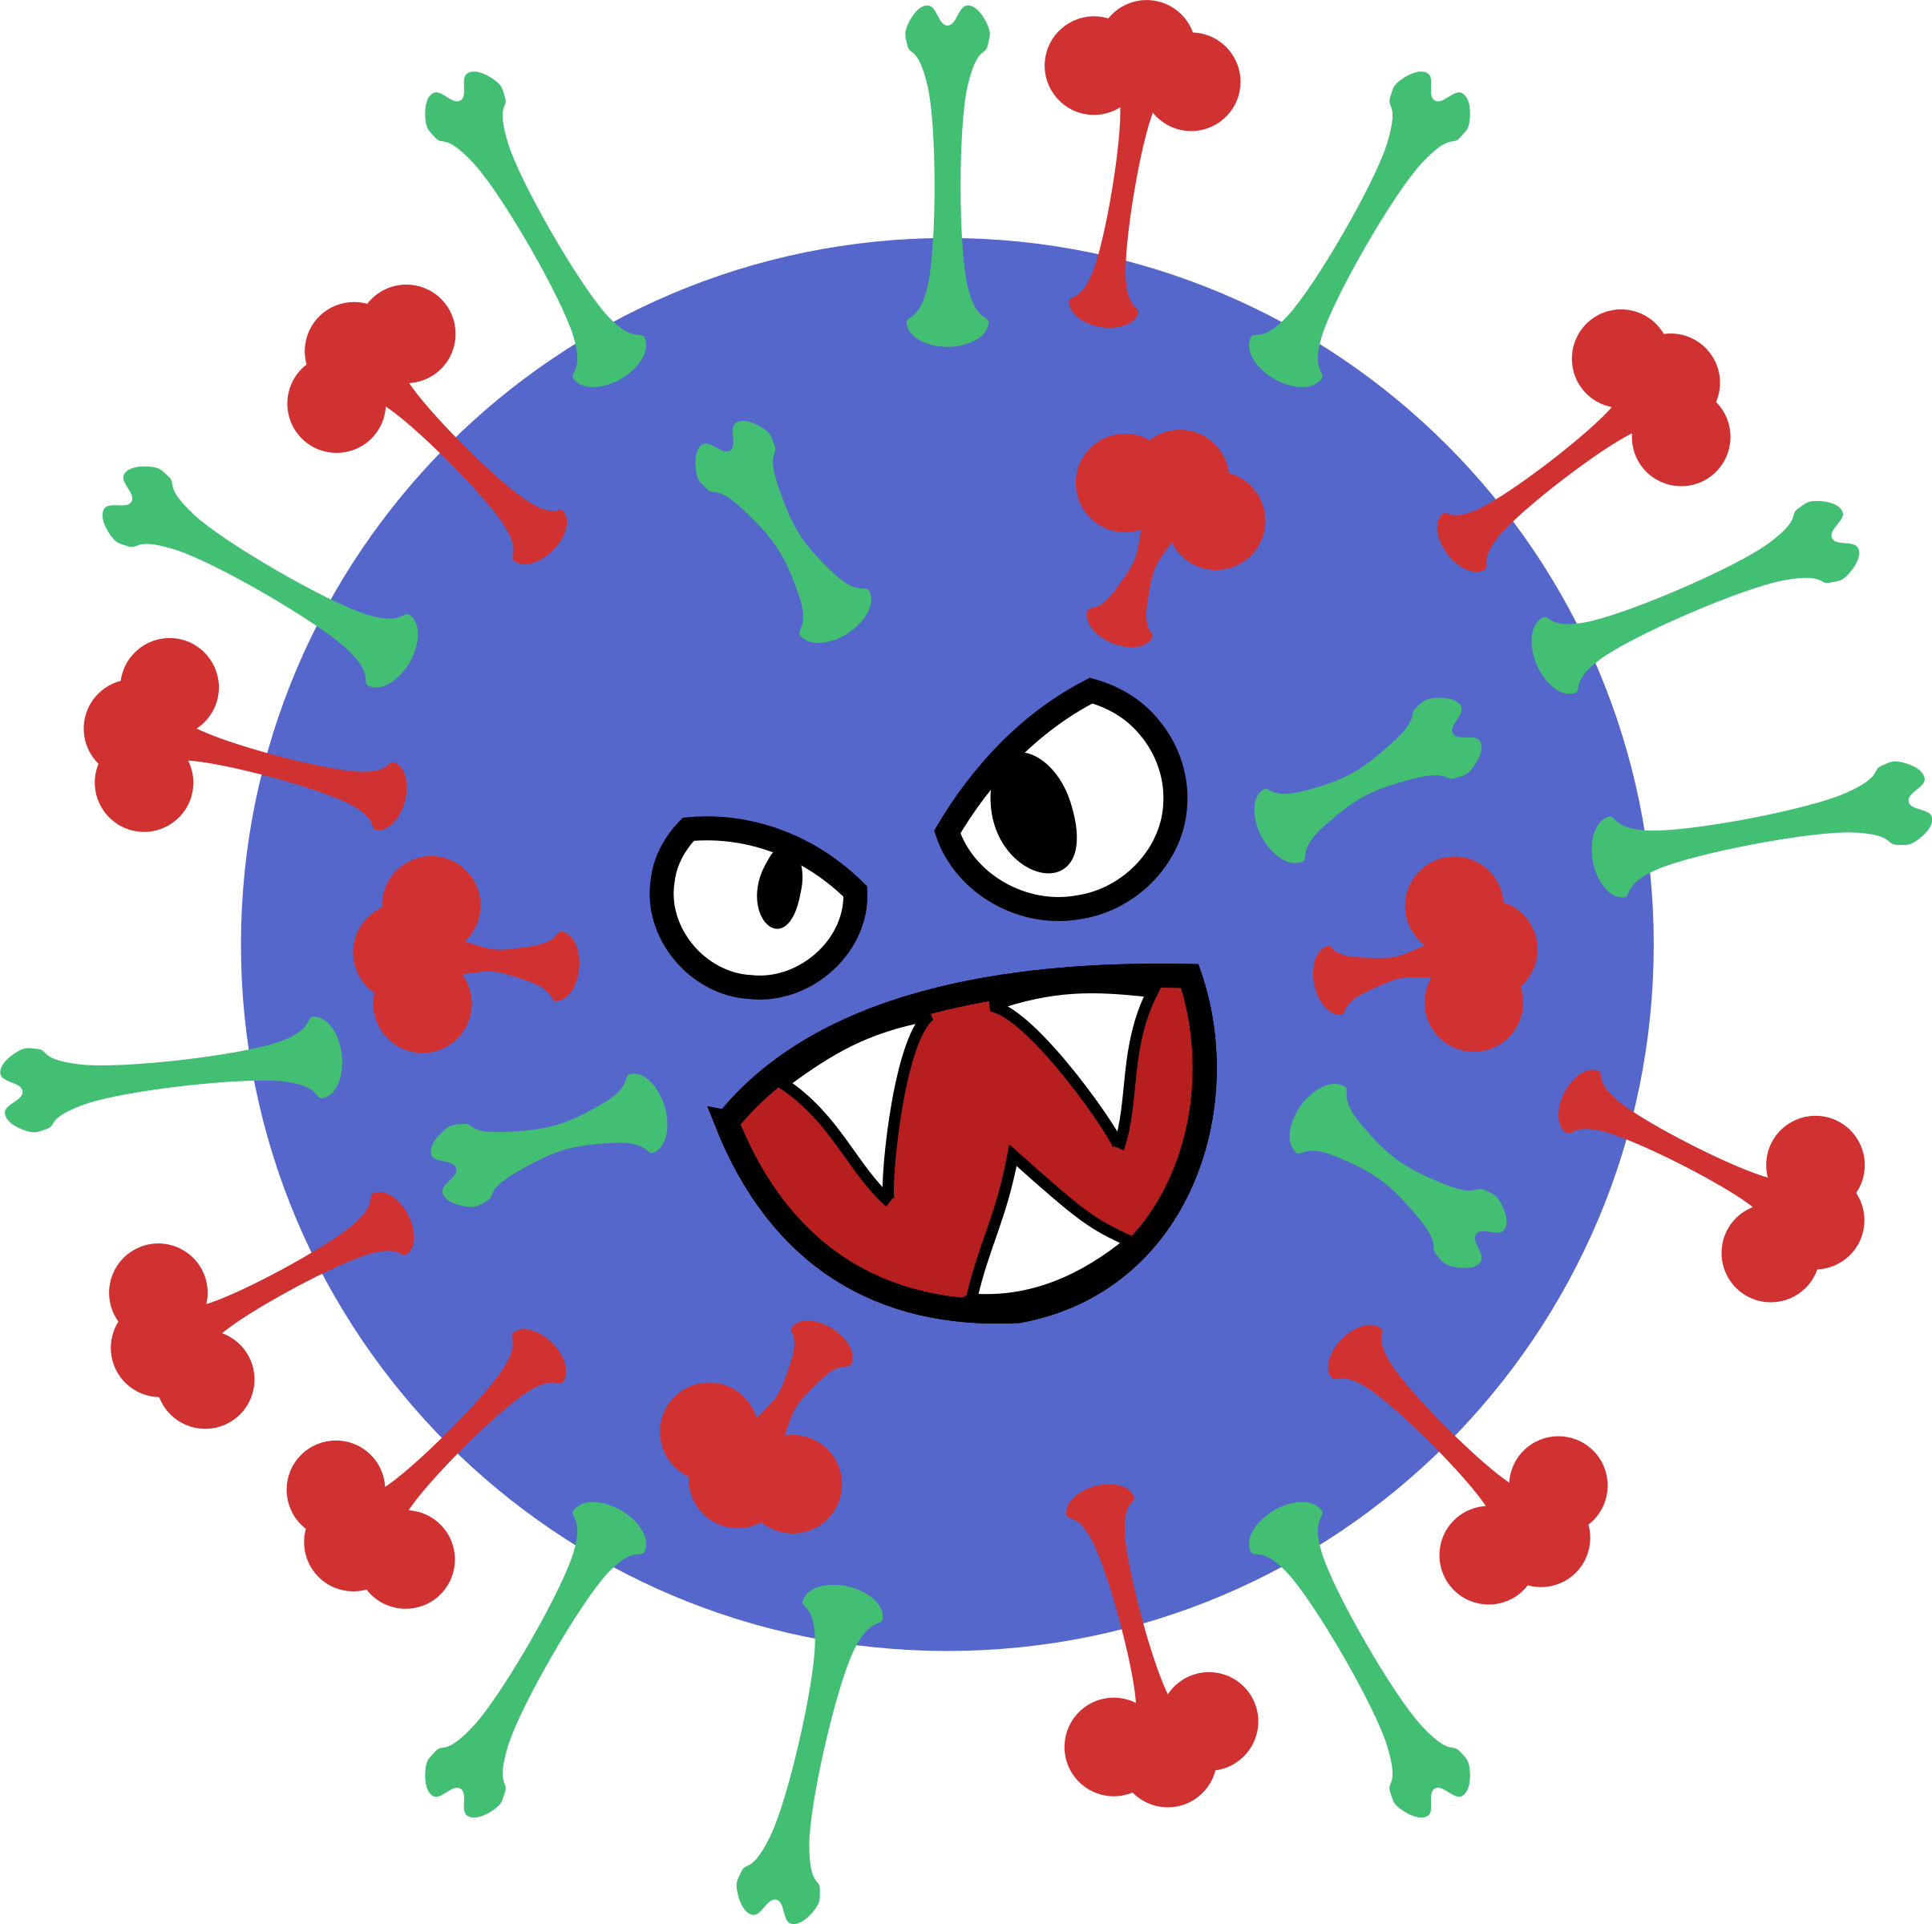 Вирус. Микроб гриппа. Вирус мультяшный. Бактерия гриппа. Картинка вируса для детей